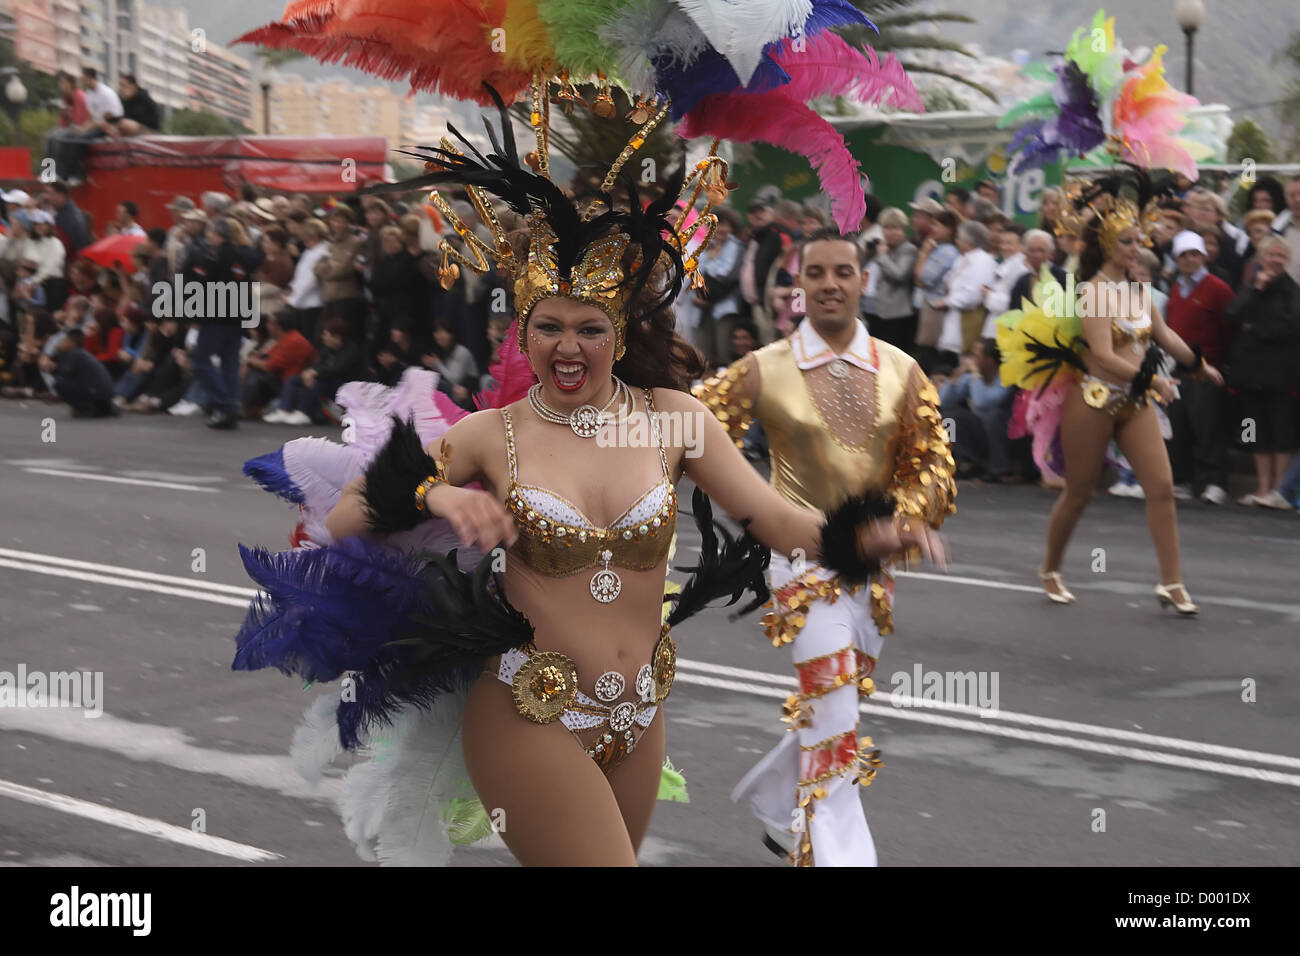 L'Espagne, Iles Canaries, Tenerife, Santa Cruz danseuse de carnaval latin avec costume de plumes. Banque D'Images